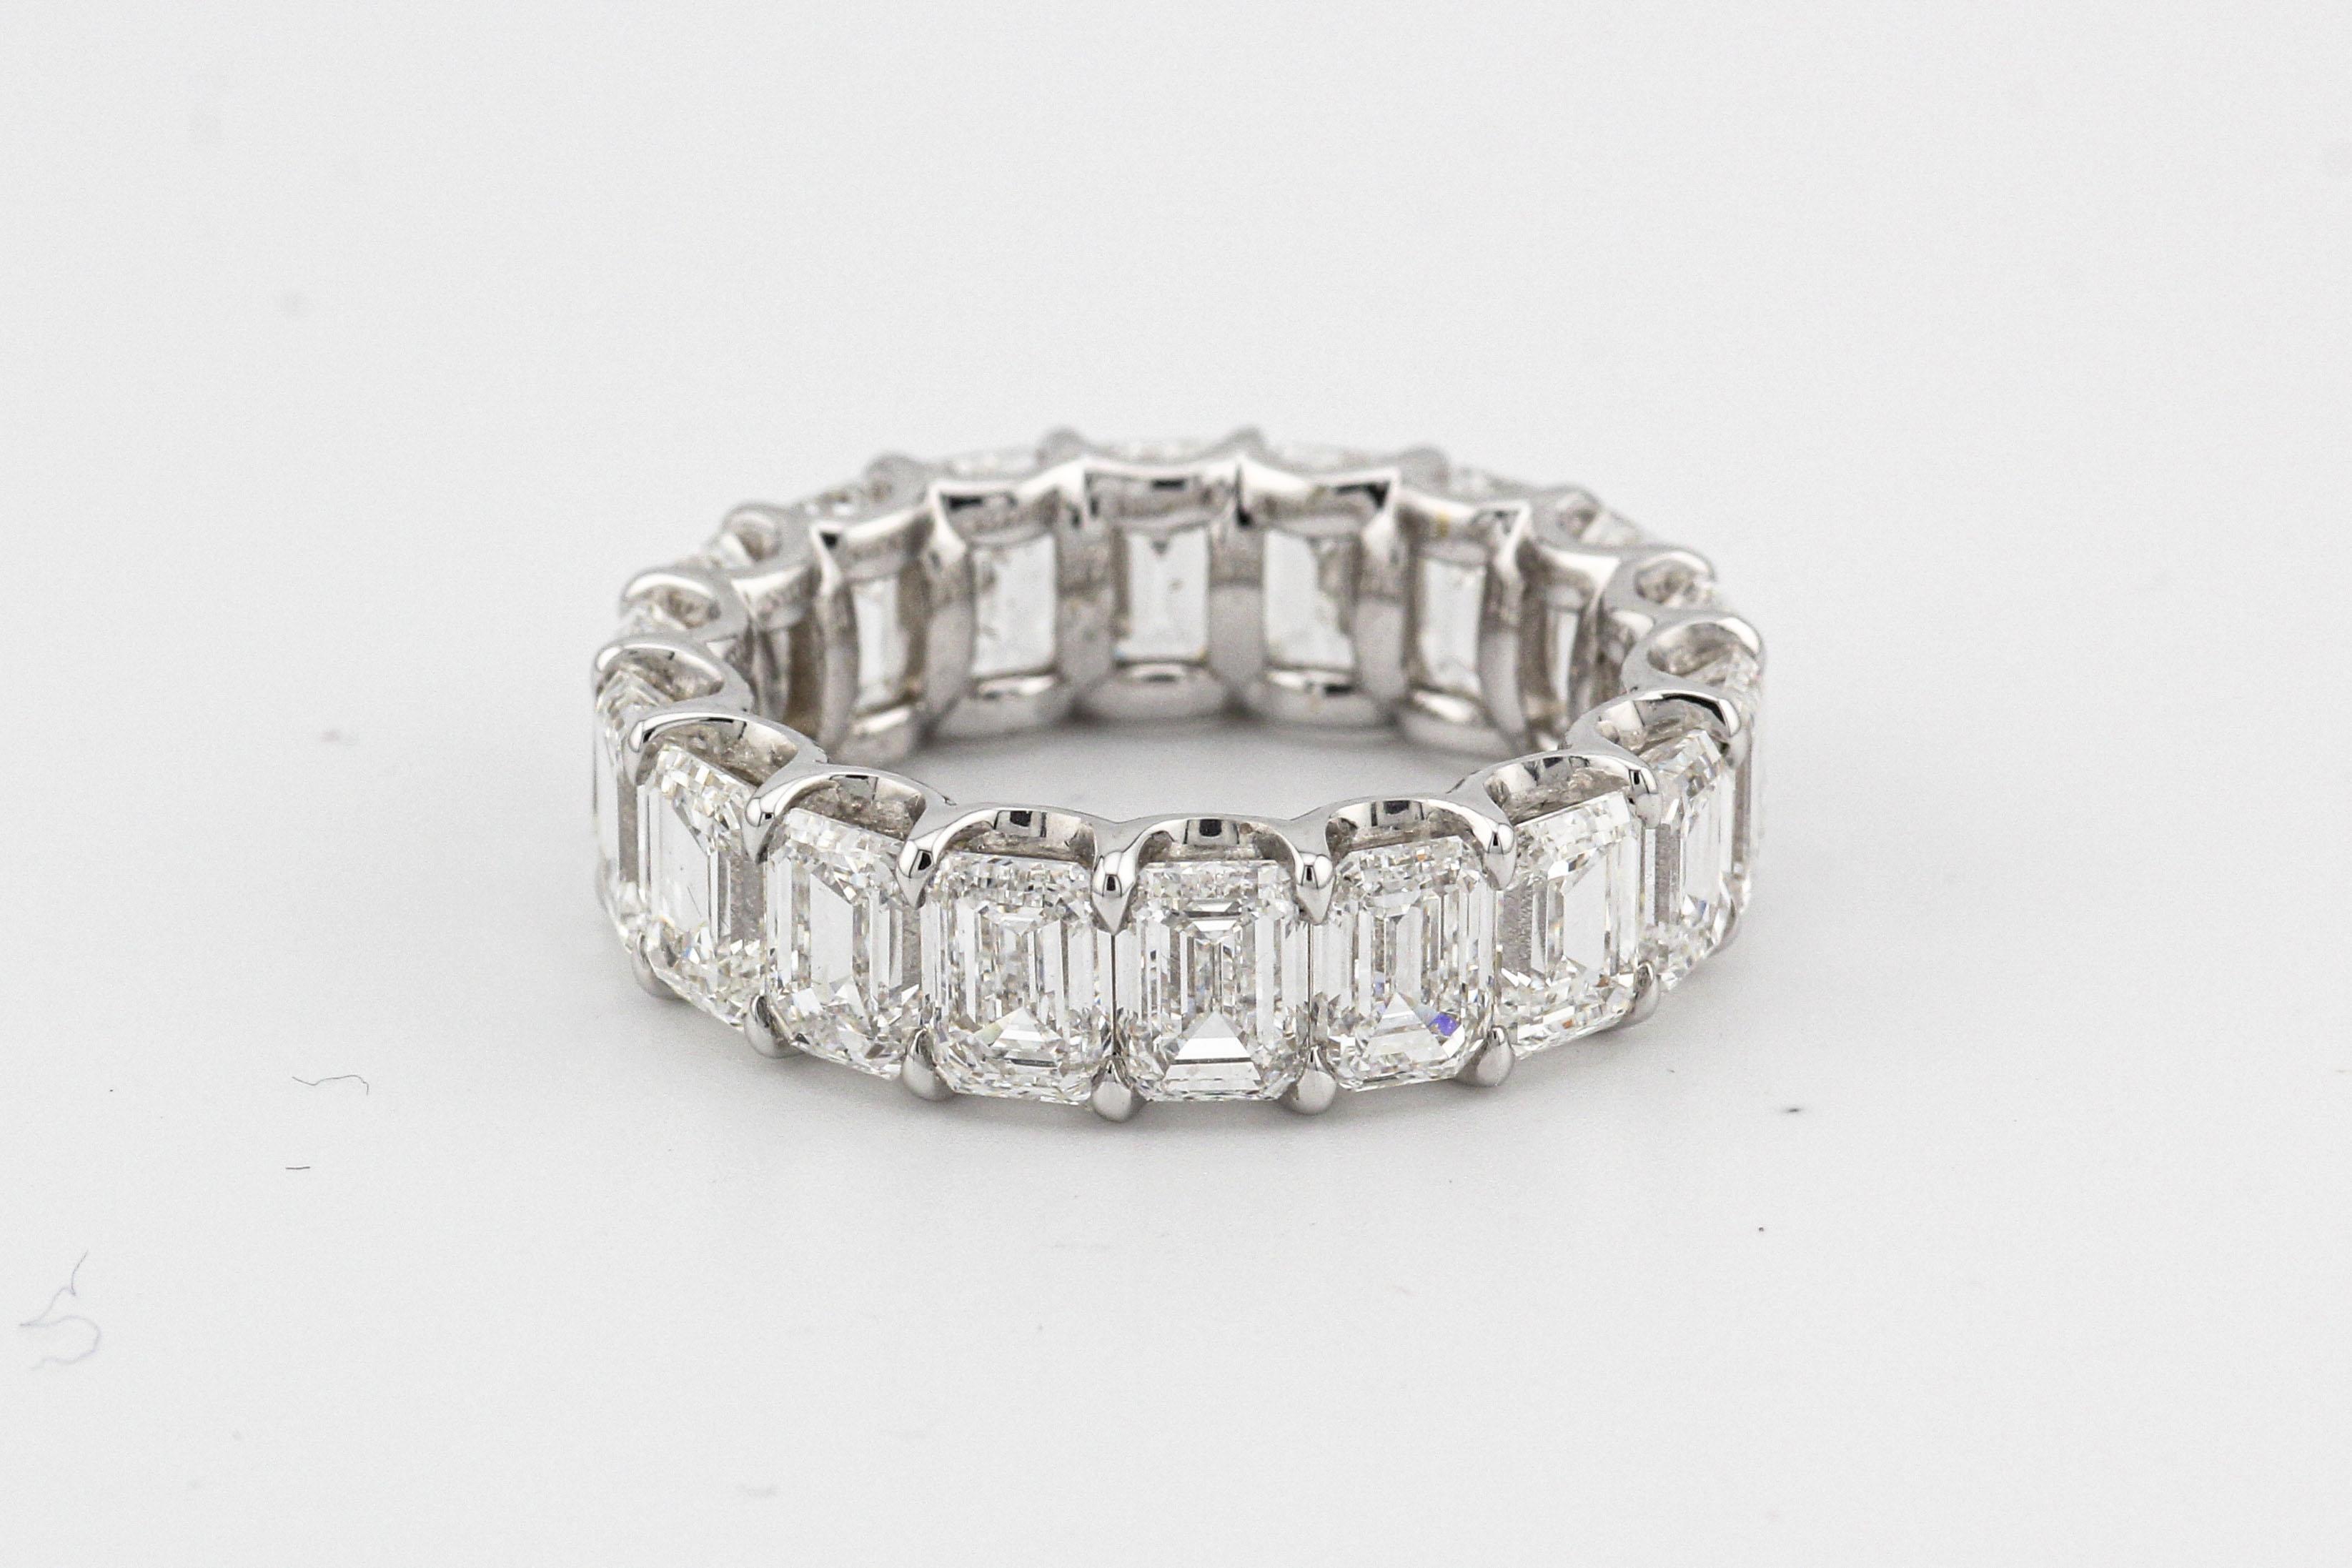 Voici une pièce de luxe extraordinaire : le bracelet d'éternité en or blanc 18k avec diamant taille émeraude exceptionnel D-F IF-VVS2 de 9,01 carats. Cette superbe pièce est une célébration de l'artisanat inégalé, des diamants exquis et de